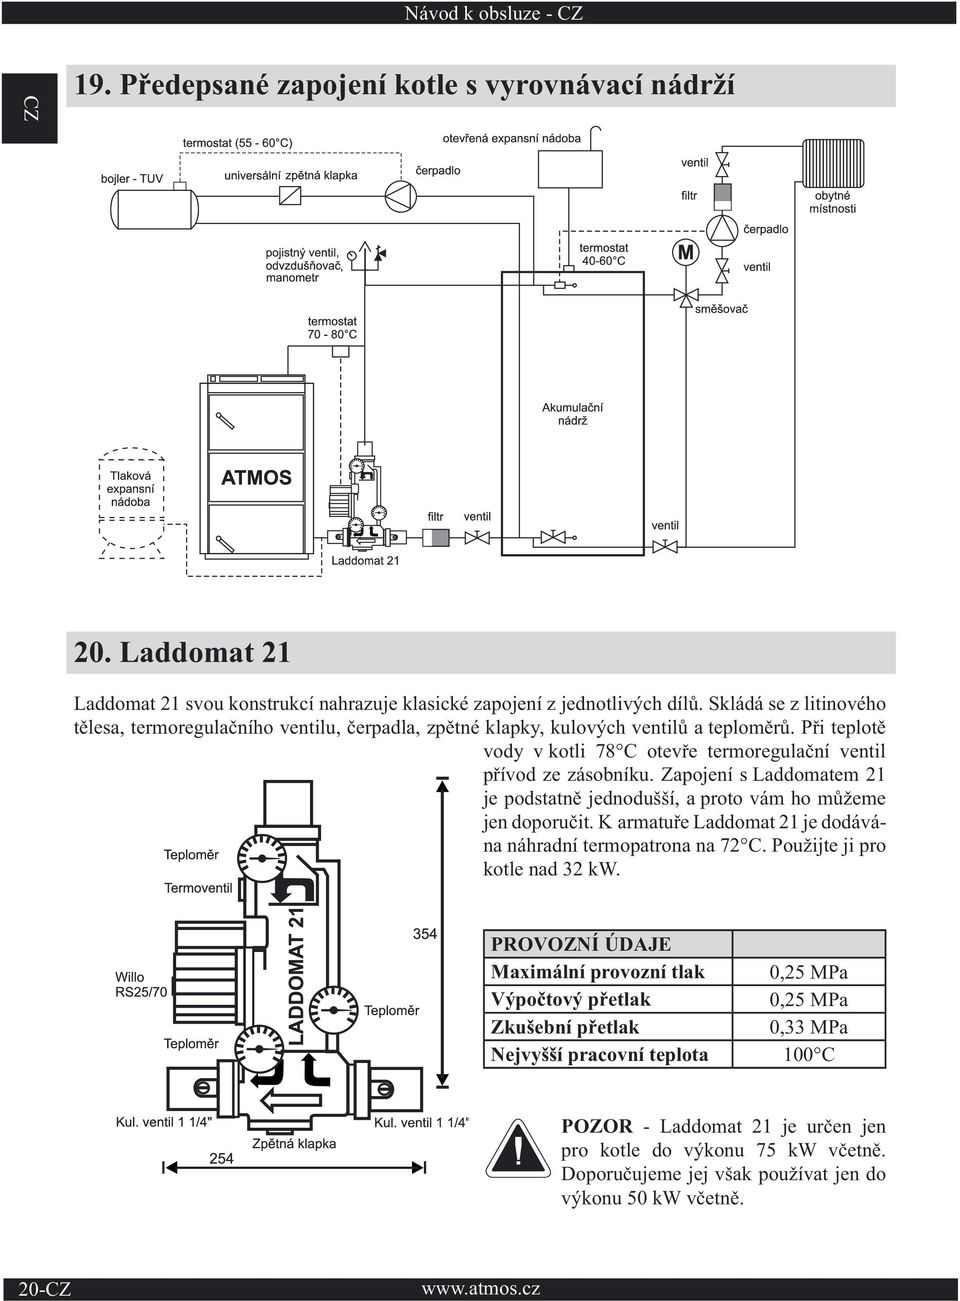 Zapojení s Laddomatem 21 je podstatně jednodušší, a proto vám ho můžeme jen doporučit. K armatuře Laddomat 21 je dodávána náhradní termopatrona na 72 C. Použijte ji pro kotle nad 32 kw.